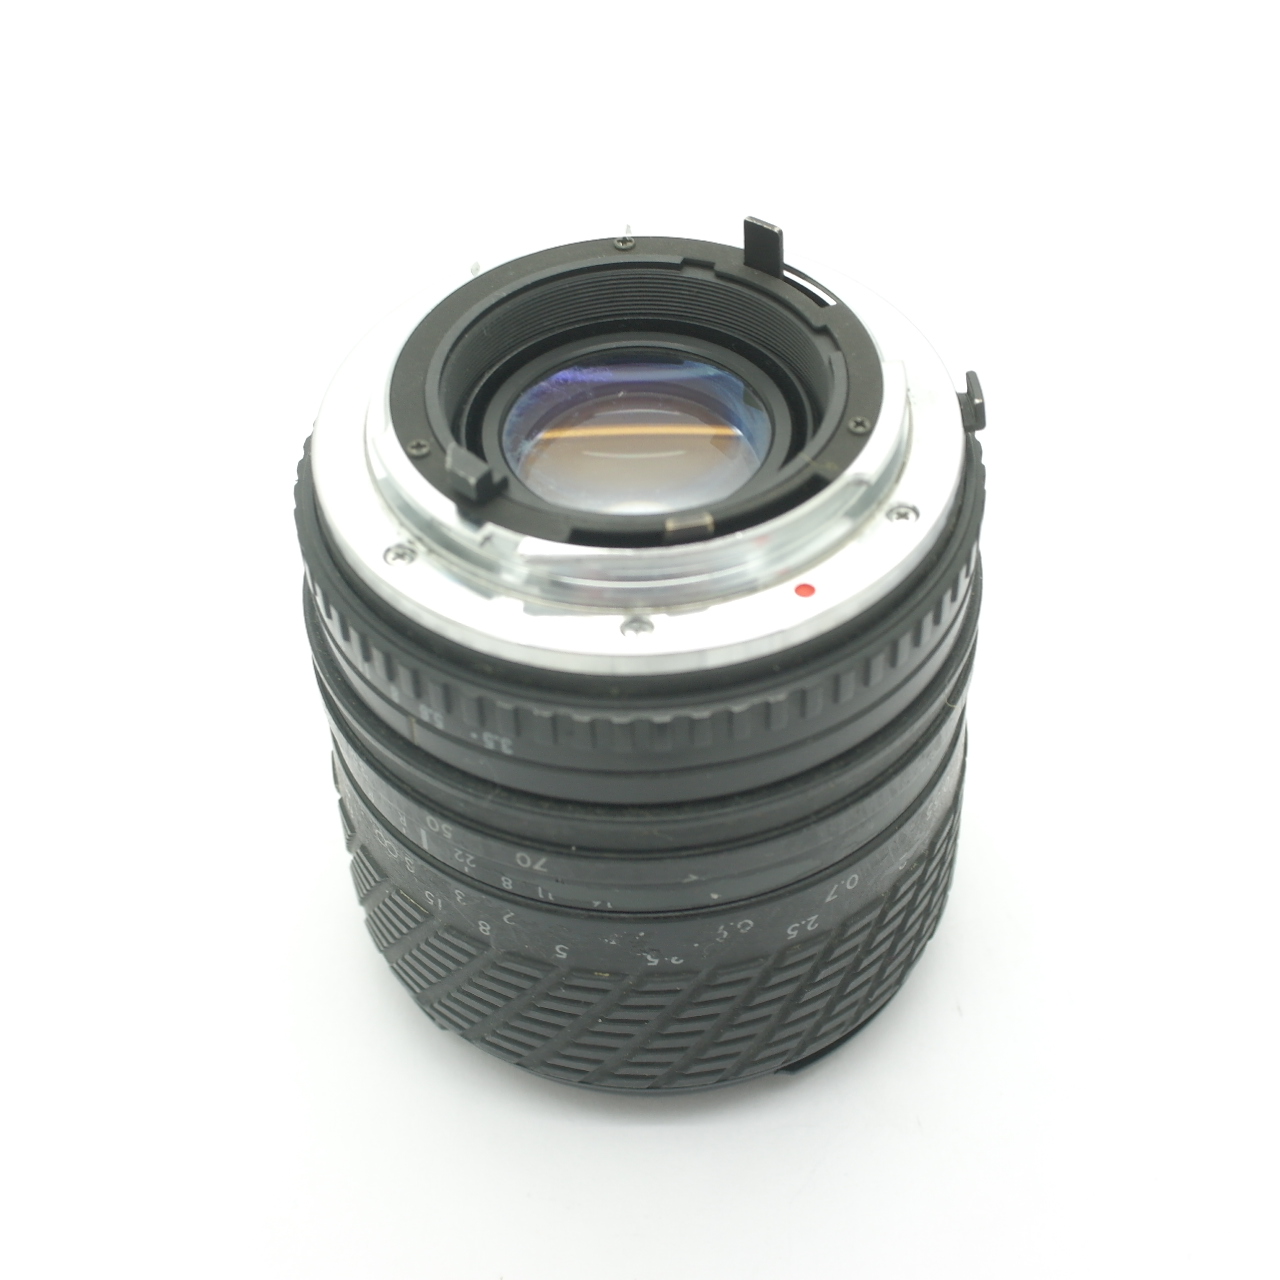 Obiettivo MC SONNAR 2,8/180 CARL ZEISS JENA DDR + raccordo per Nikon o Canon eos